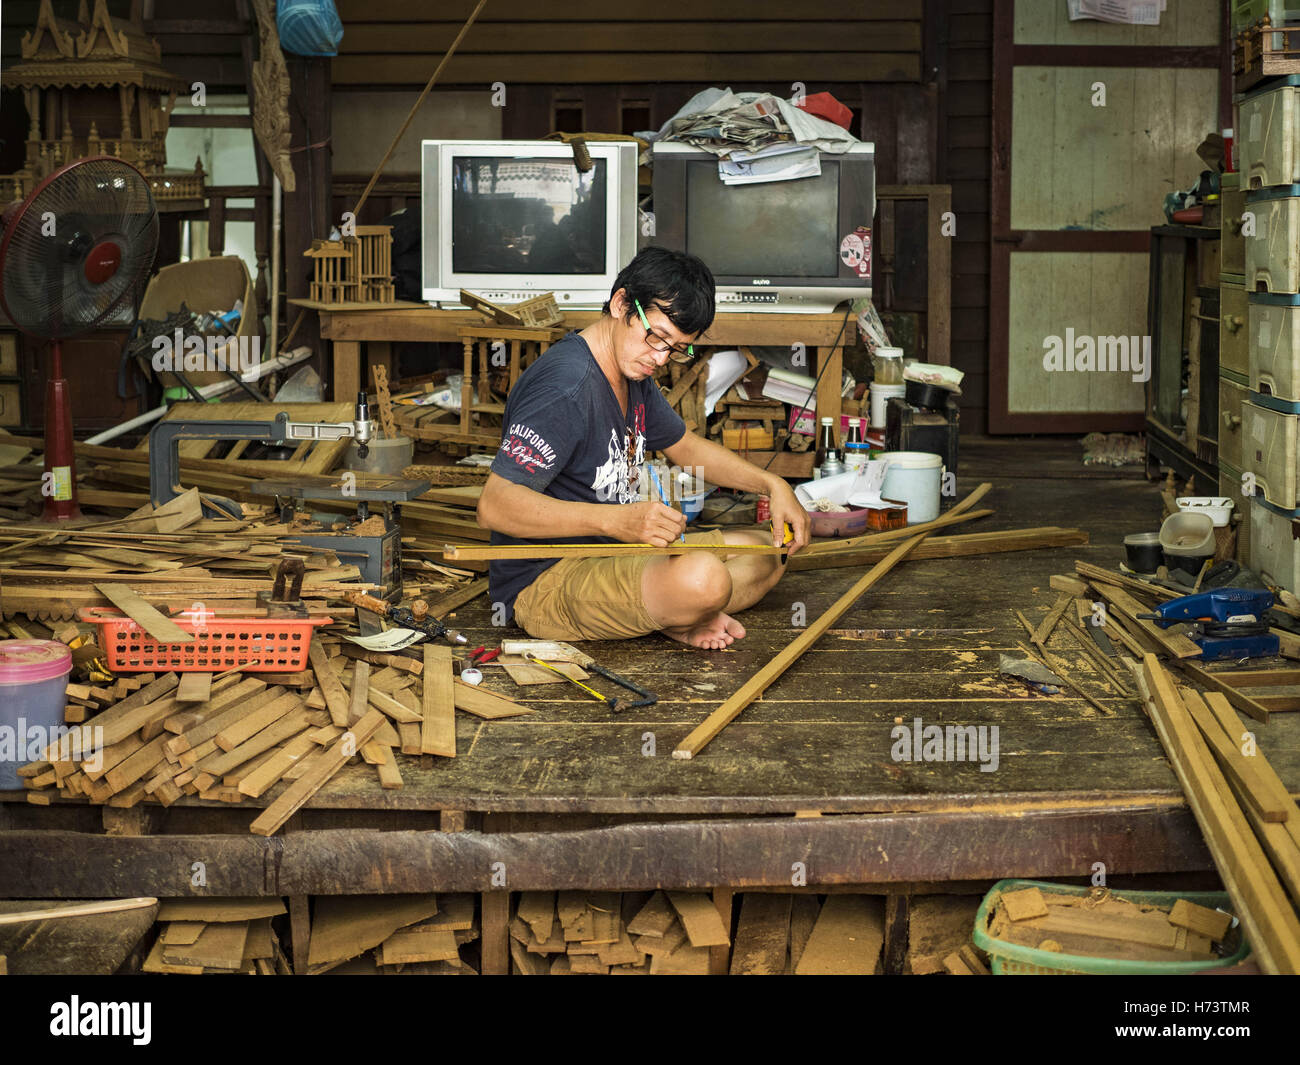 Bangkok, Bangkok, Thaïlande. 2e Nov, 2016. KO, le frère de Gob, mesures teck pour un esprit maison. Il travaille avec sa soeur dans le petit atelier familial qui fait l'esprit des maisons par la main de bois de teck dans l'interdiction de la communauté de l'UFCE. Il y avait 10 familles qui font l'esprit traditionnel des maisons en bois de teck de l'UFCE Interdiction, une communauté près de Wat Suttharam dans le quartier de Khlong San de Bangkok. La zone a été embourgeoisés et beaucoup de l'esprit house décideurs ont déménagé, leurs maisons thaï traditionnelles en bois remplacés par des appartements modernes. Maintenant, il y a seulement une famille faire de la complexe sp Banque D'Images